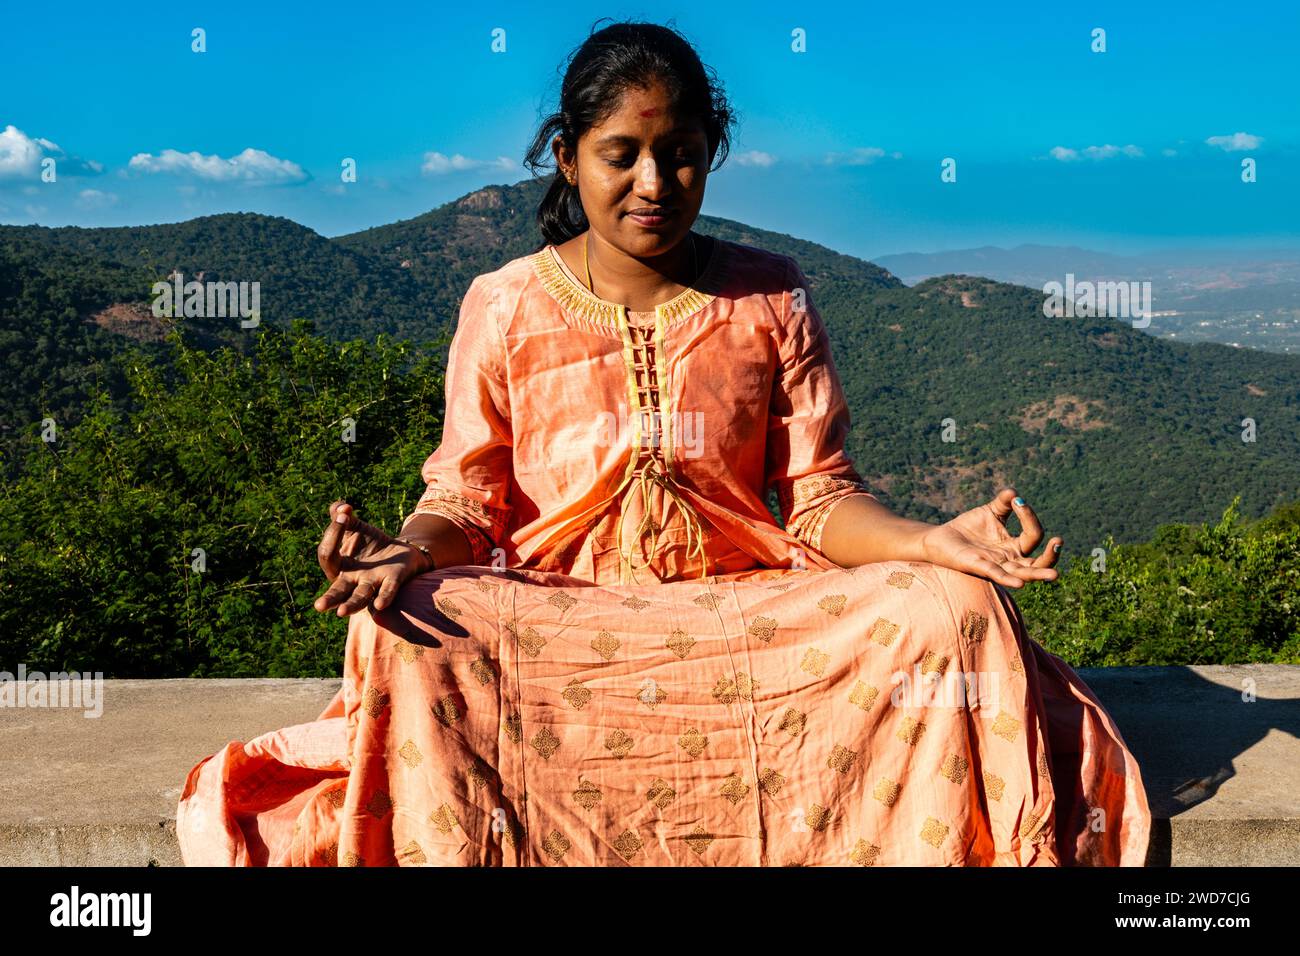 Une femme indienne vêtue d'un sari vibrant cherche le réconfort et la connexion spirituelle par la méditation au milieu des vues impressionnantes de la montagne Banque D'Images